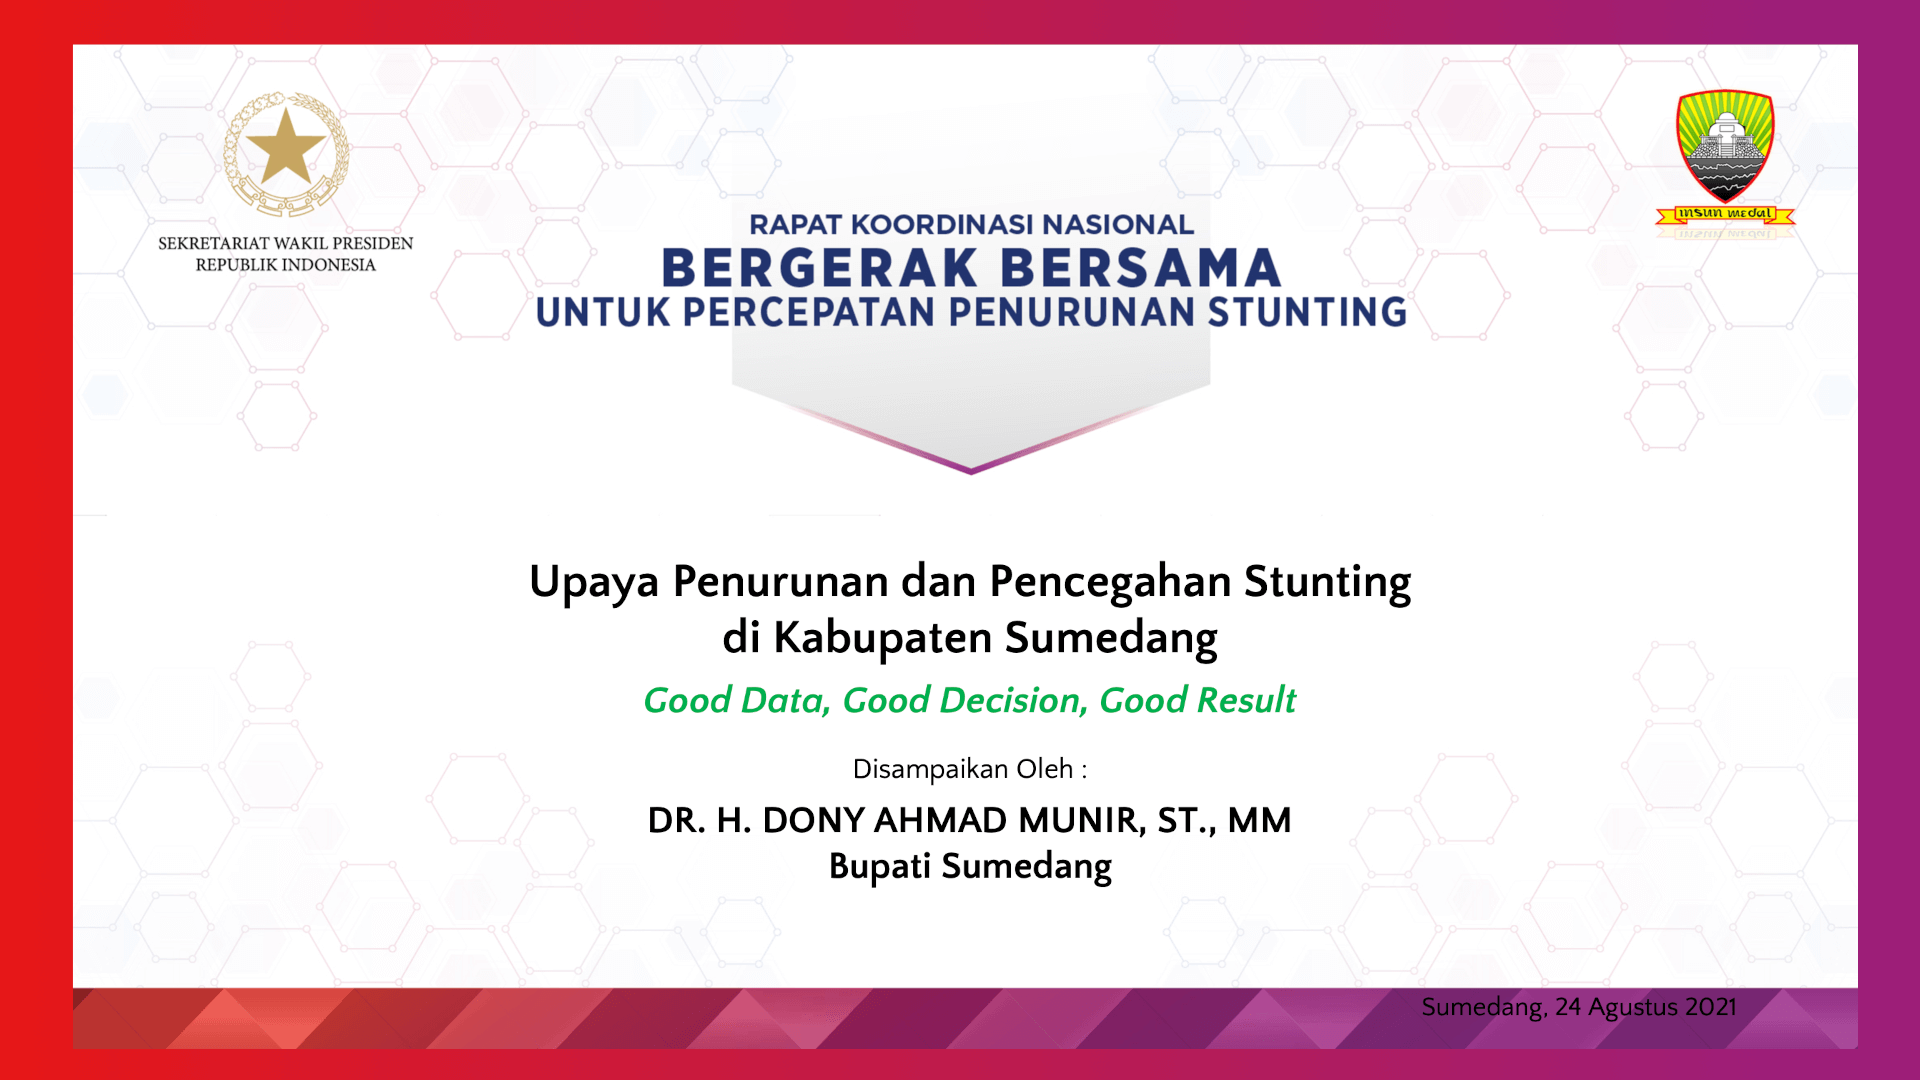 DR. H. Dony Ahmad Munir, ST., MM – Upaya Penurunan dan Pencegahan Stunting di Kabupaten Sumedang